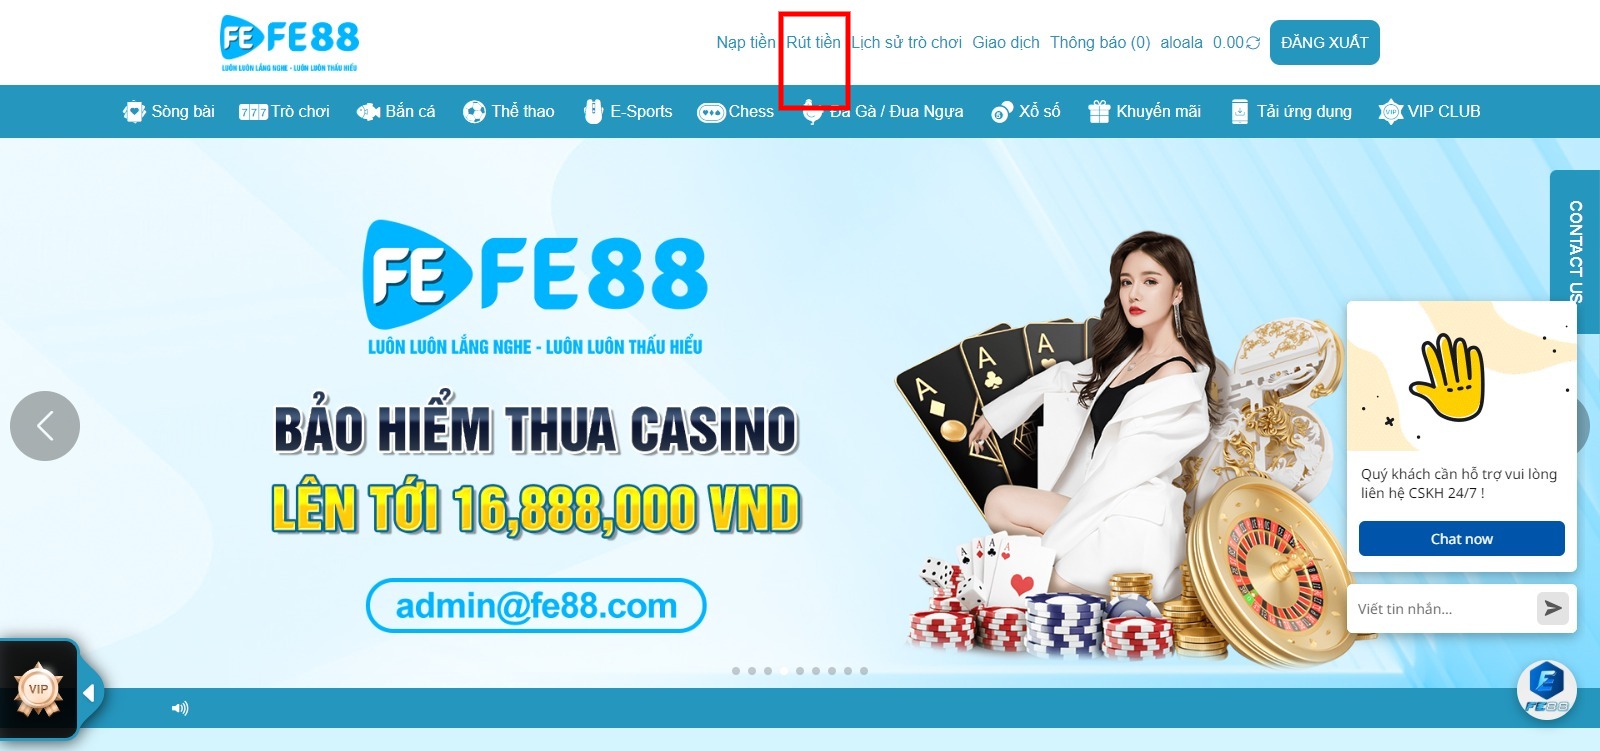 Hướng dẫn rút tiền Fe88 Casino